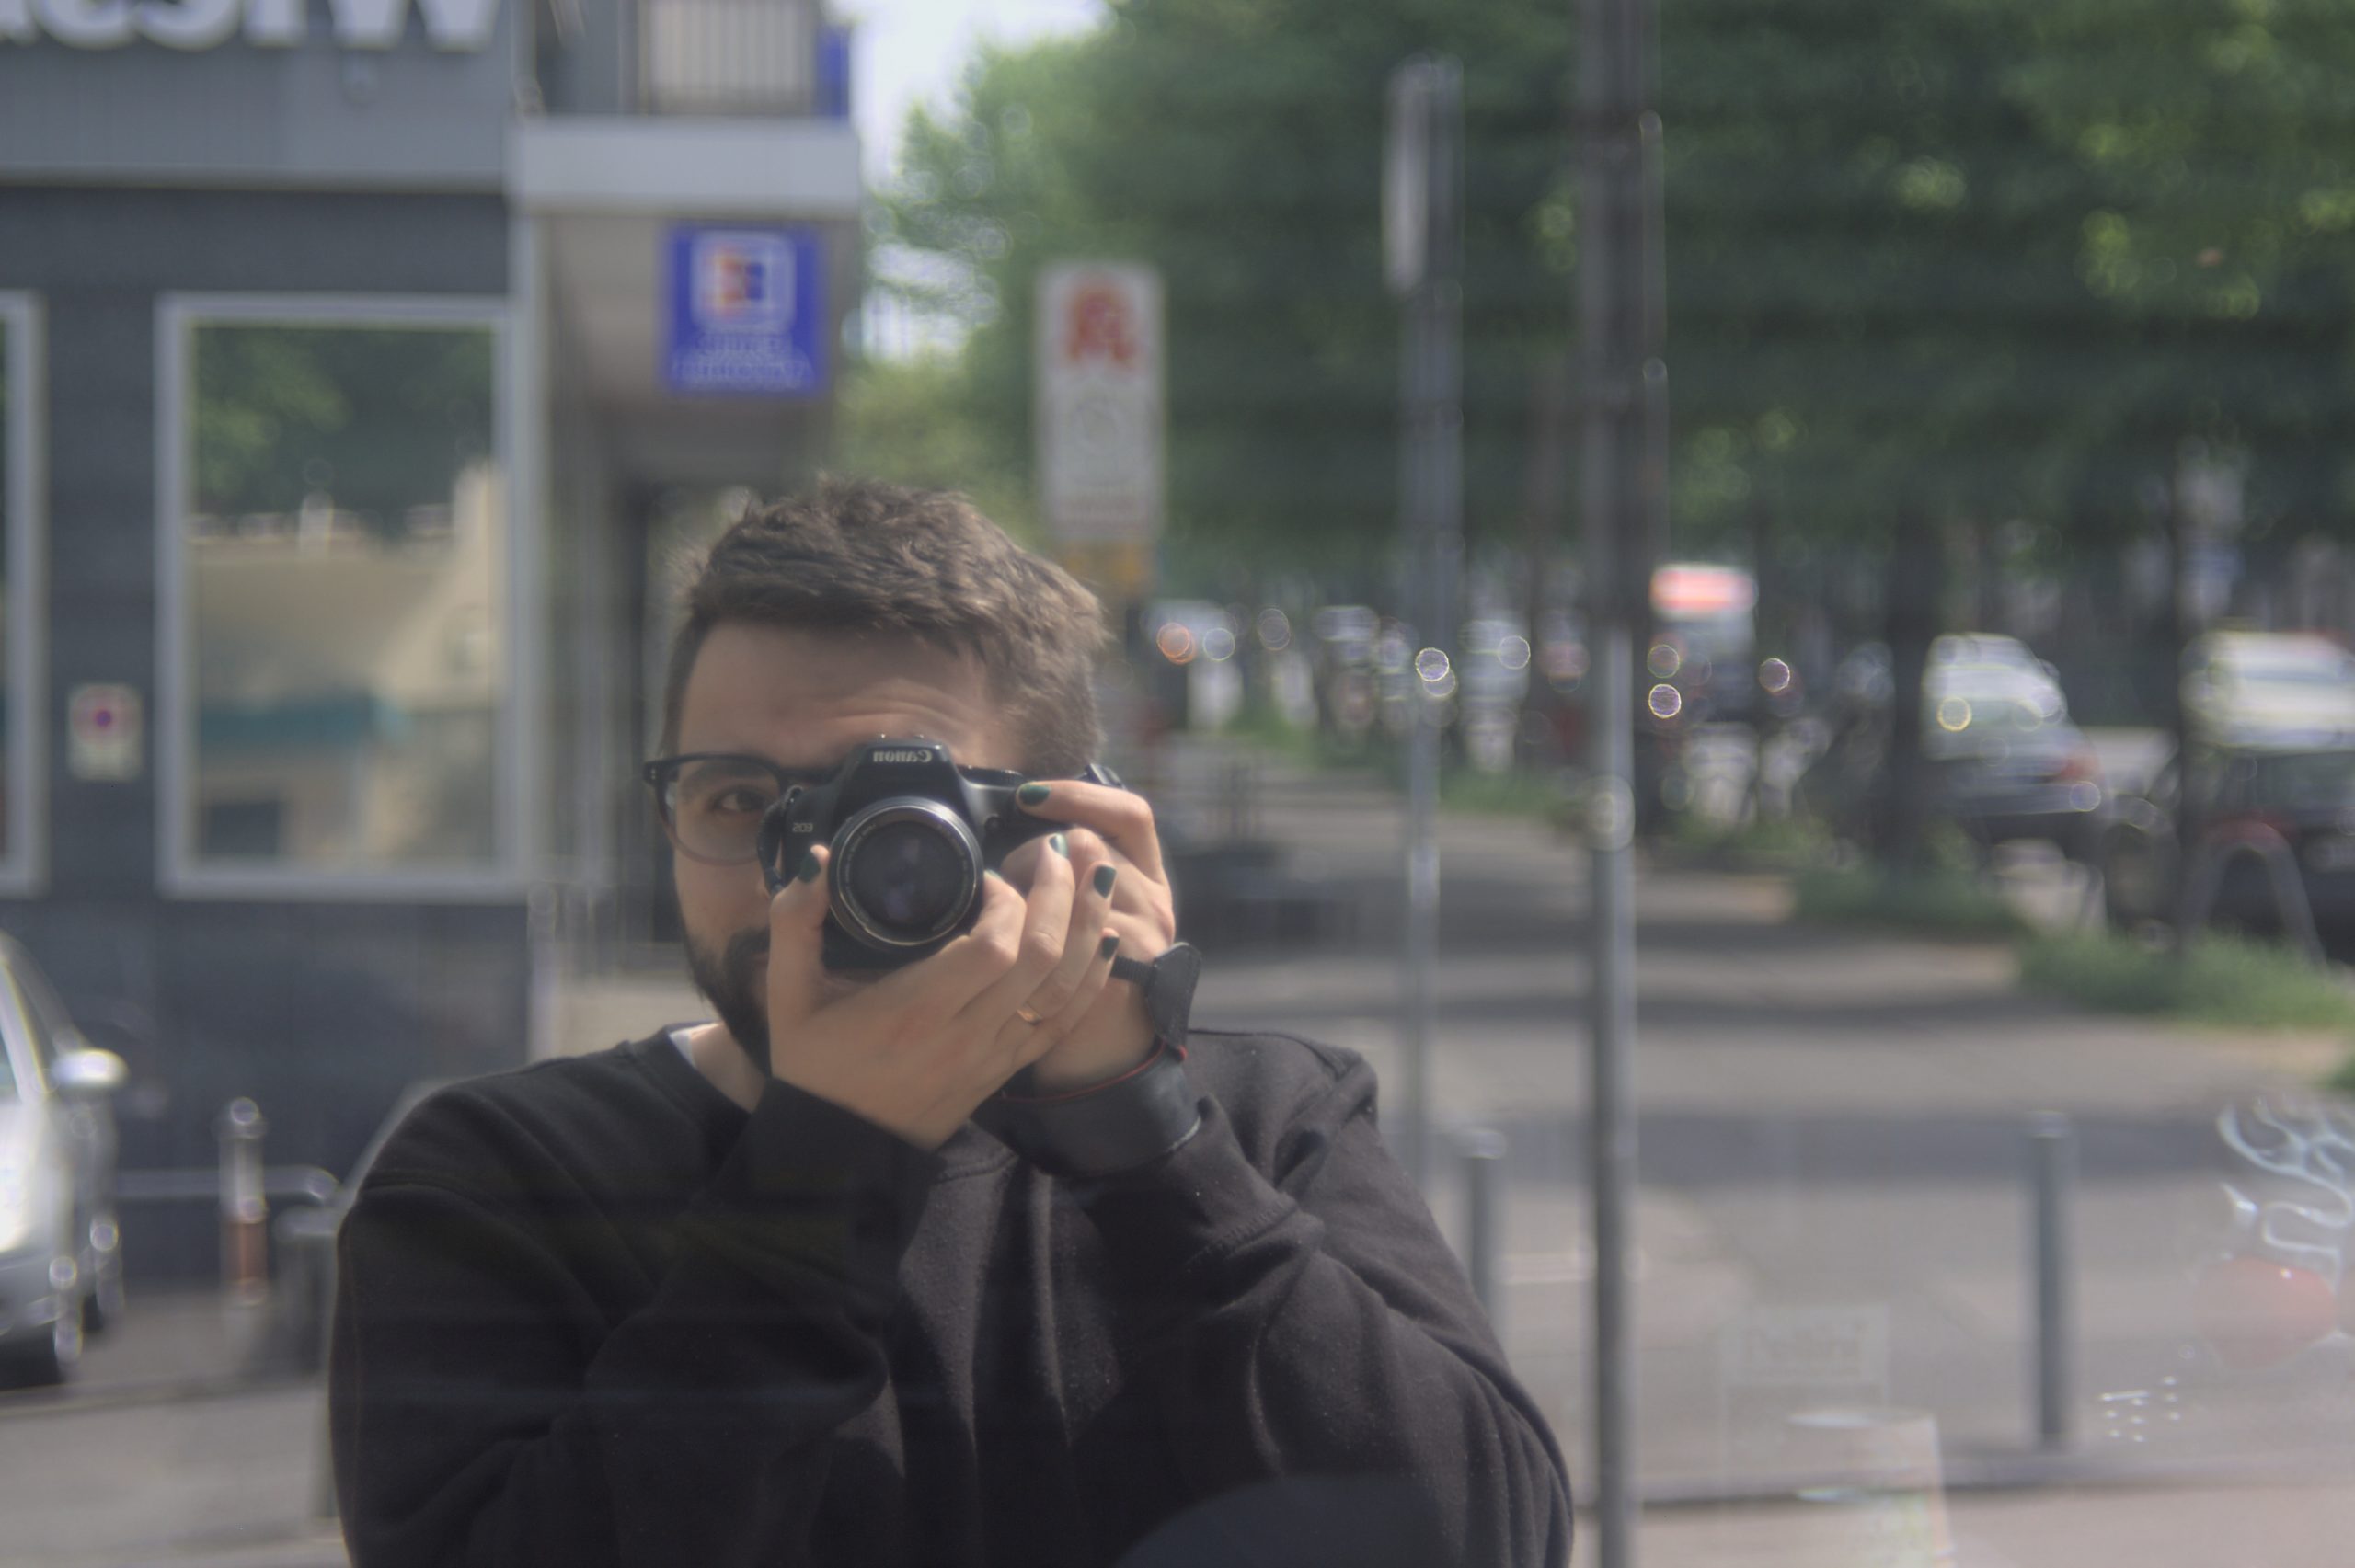 Using Konica AR lenses on my Canon EOS 1000D